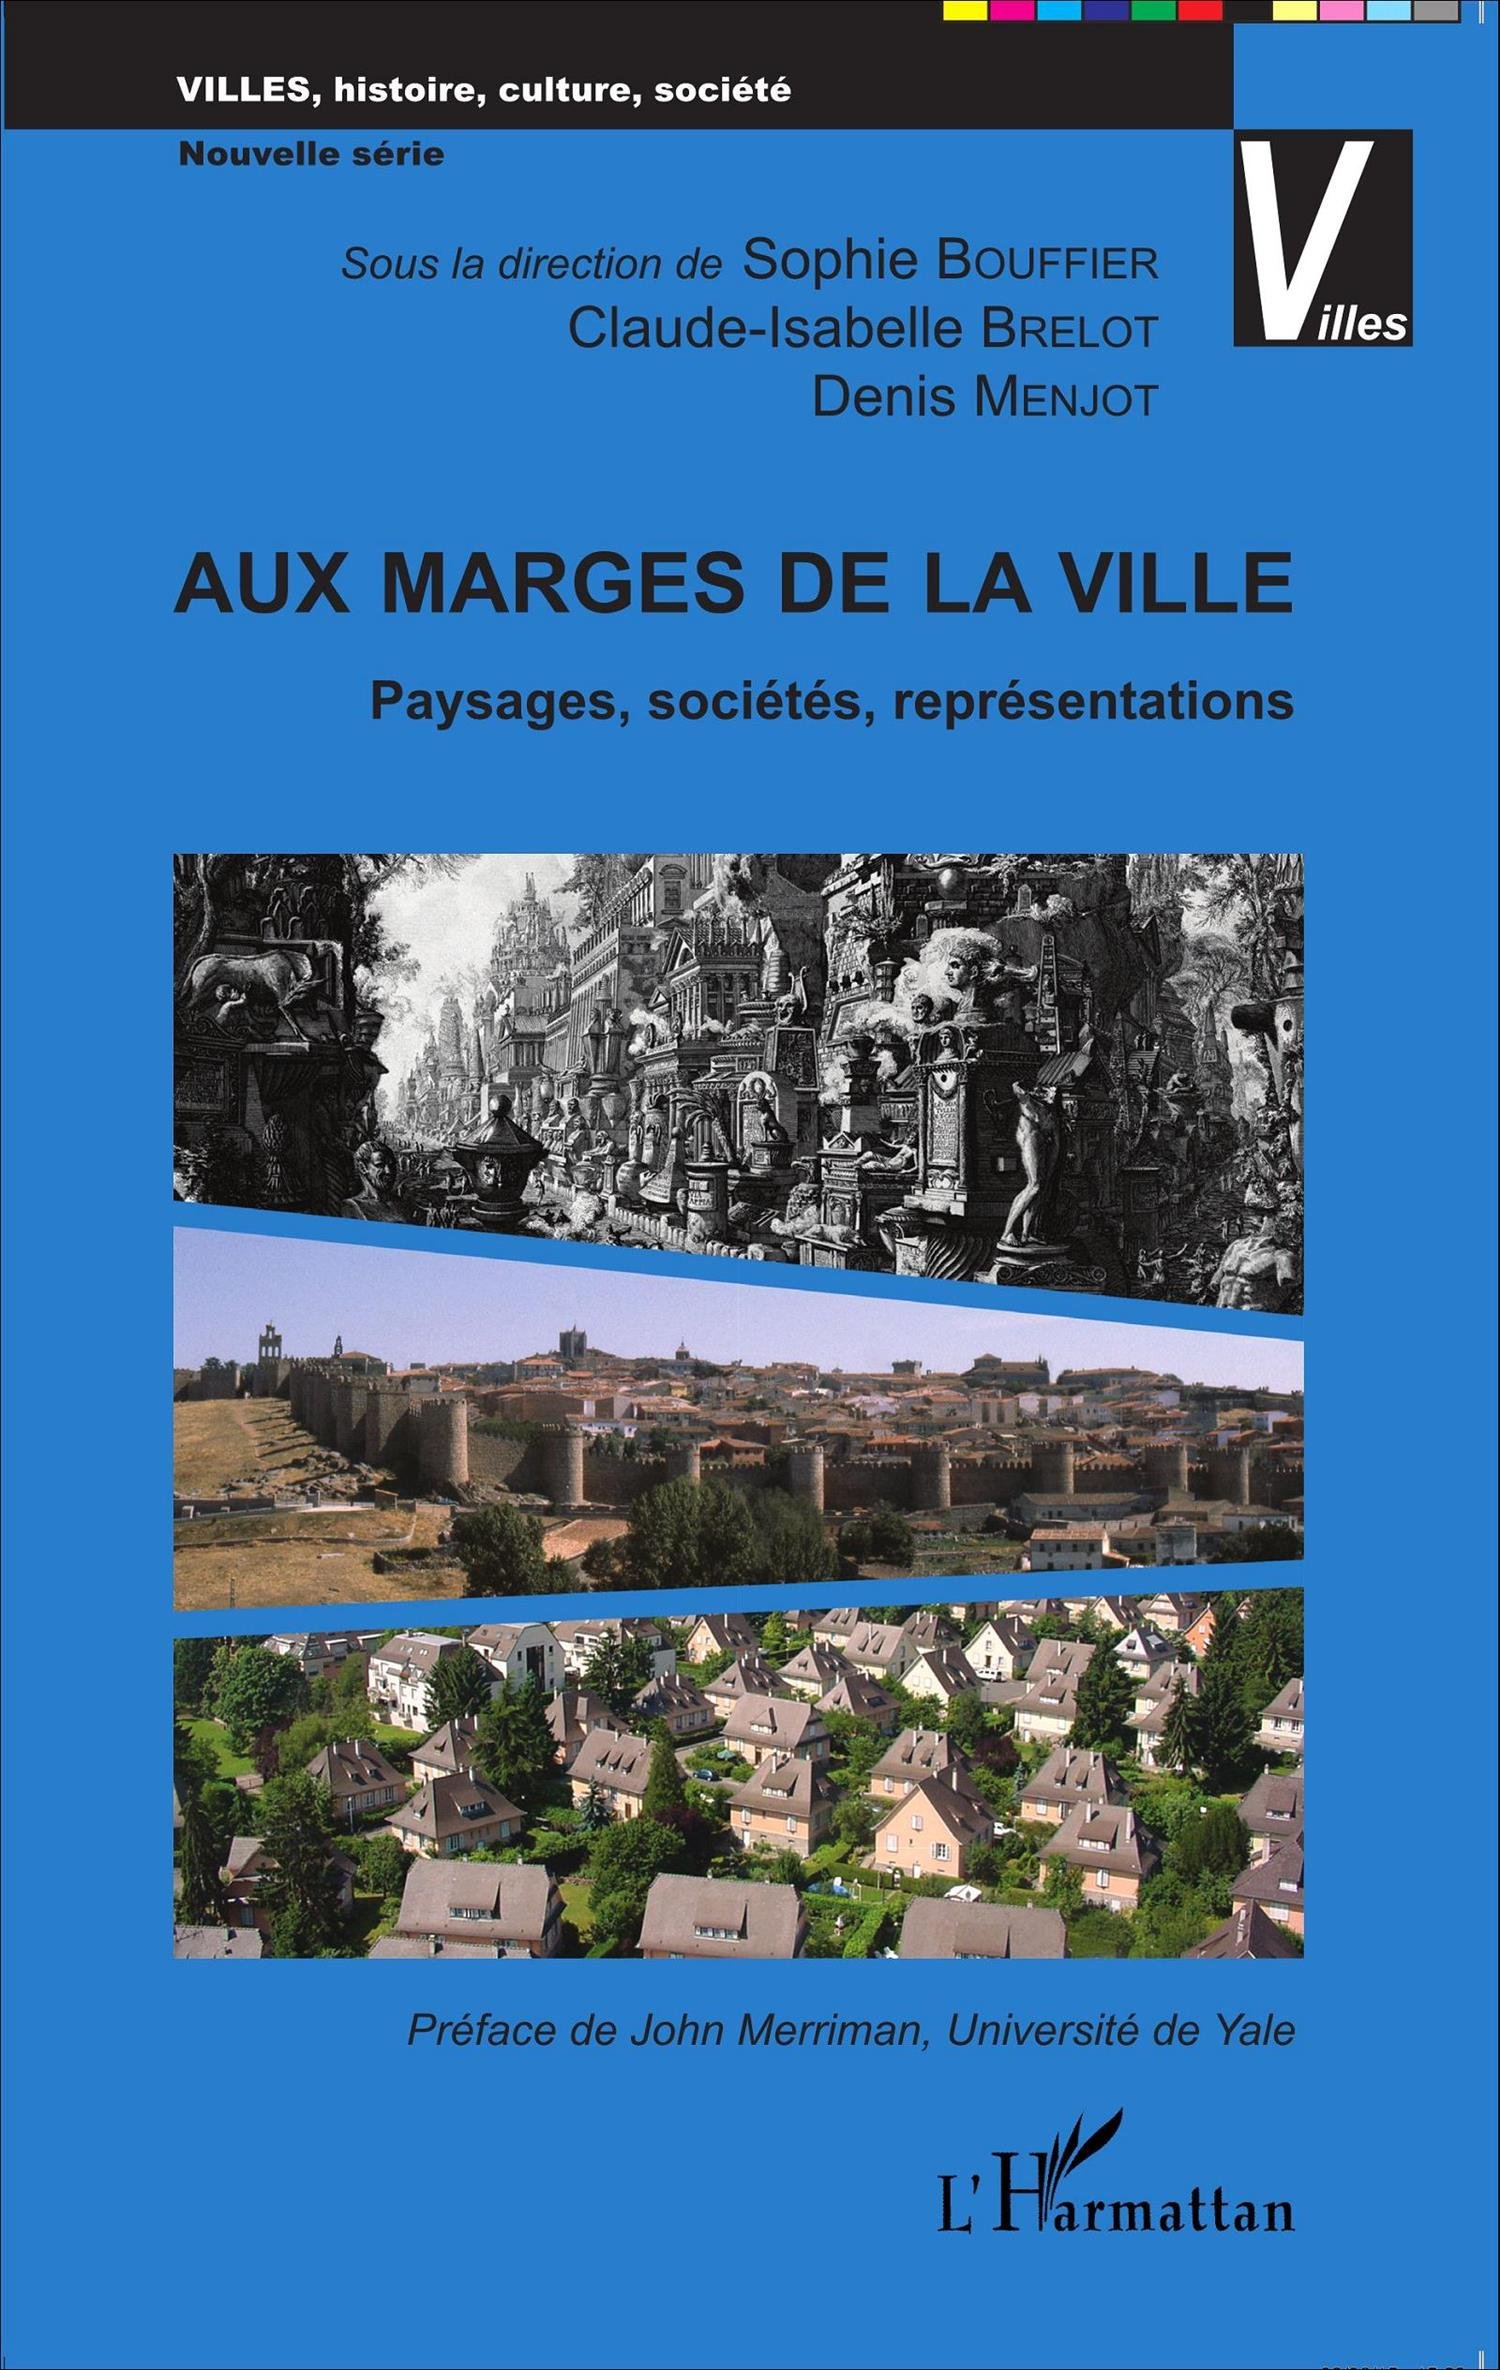 Aux marges de la ville. Paysages, sociétés, représentations, 2015, 342 p.